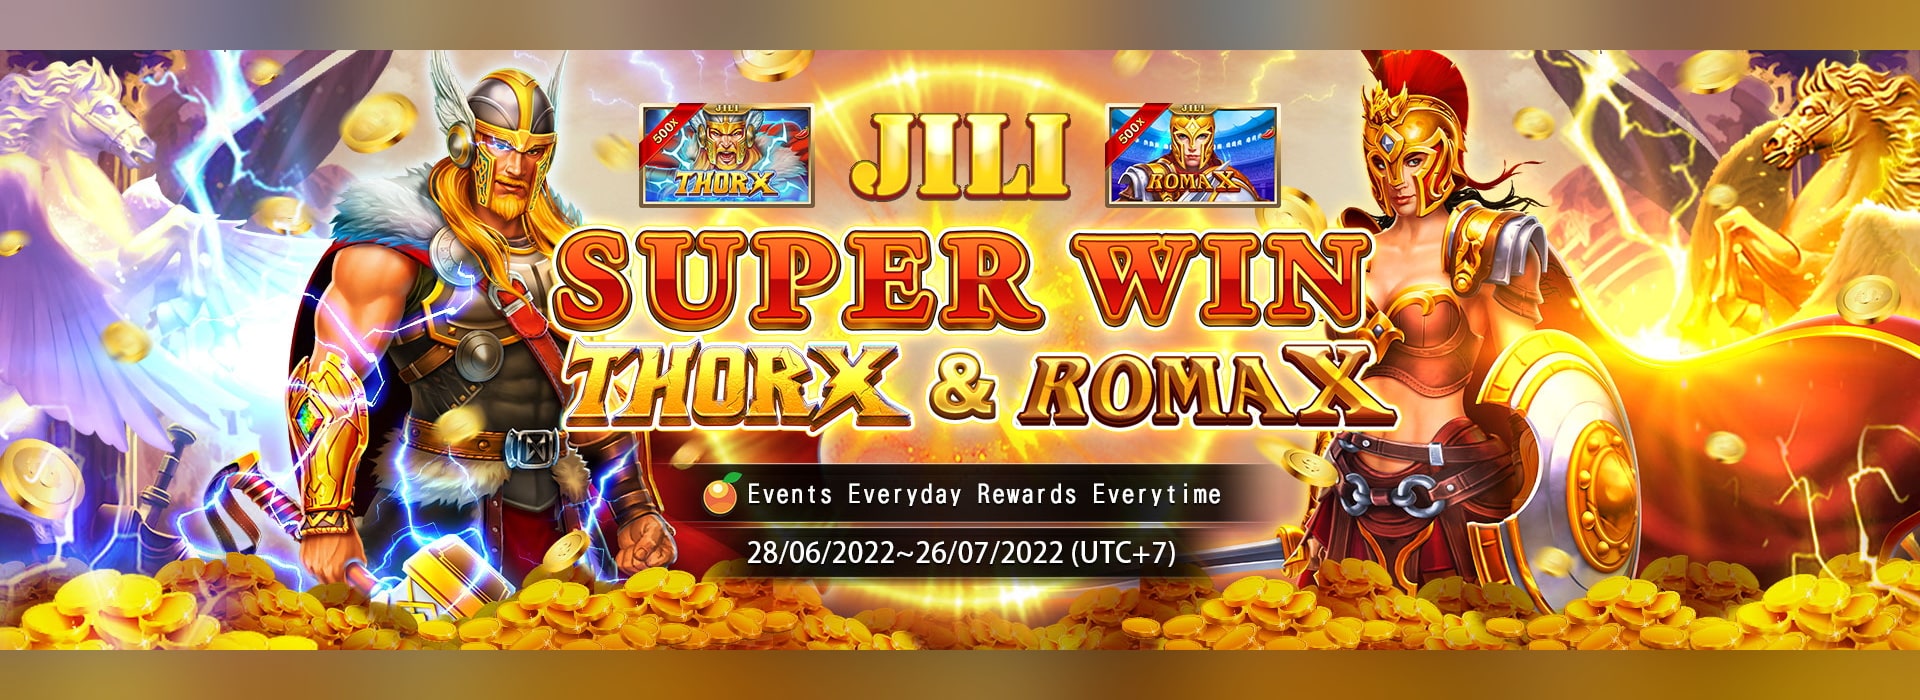 Jili Super Win 雷神X & 羅馬X